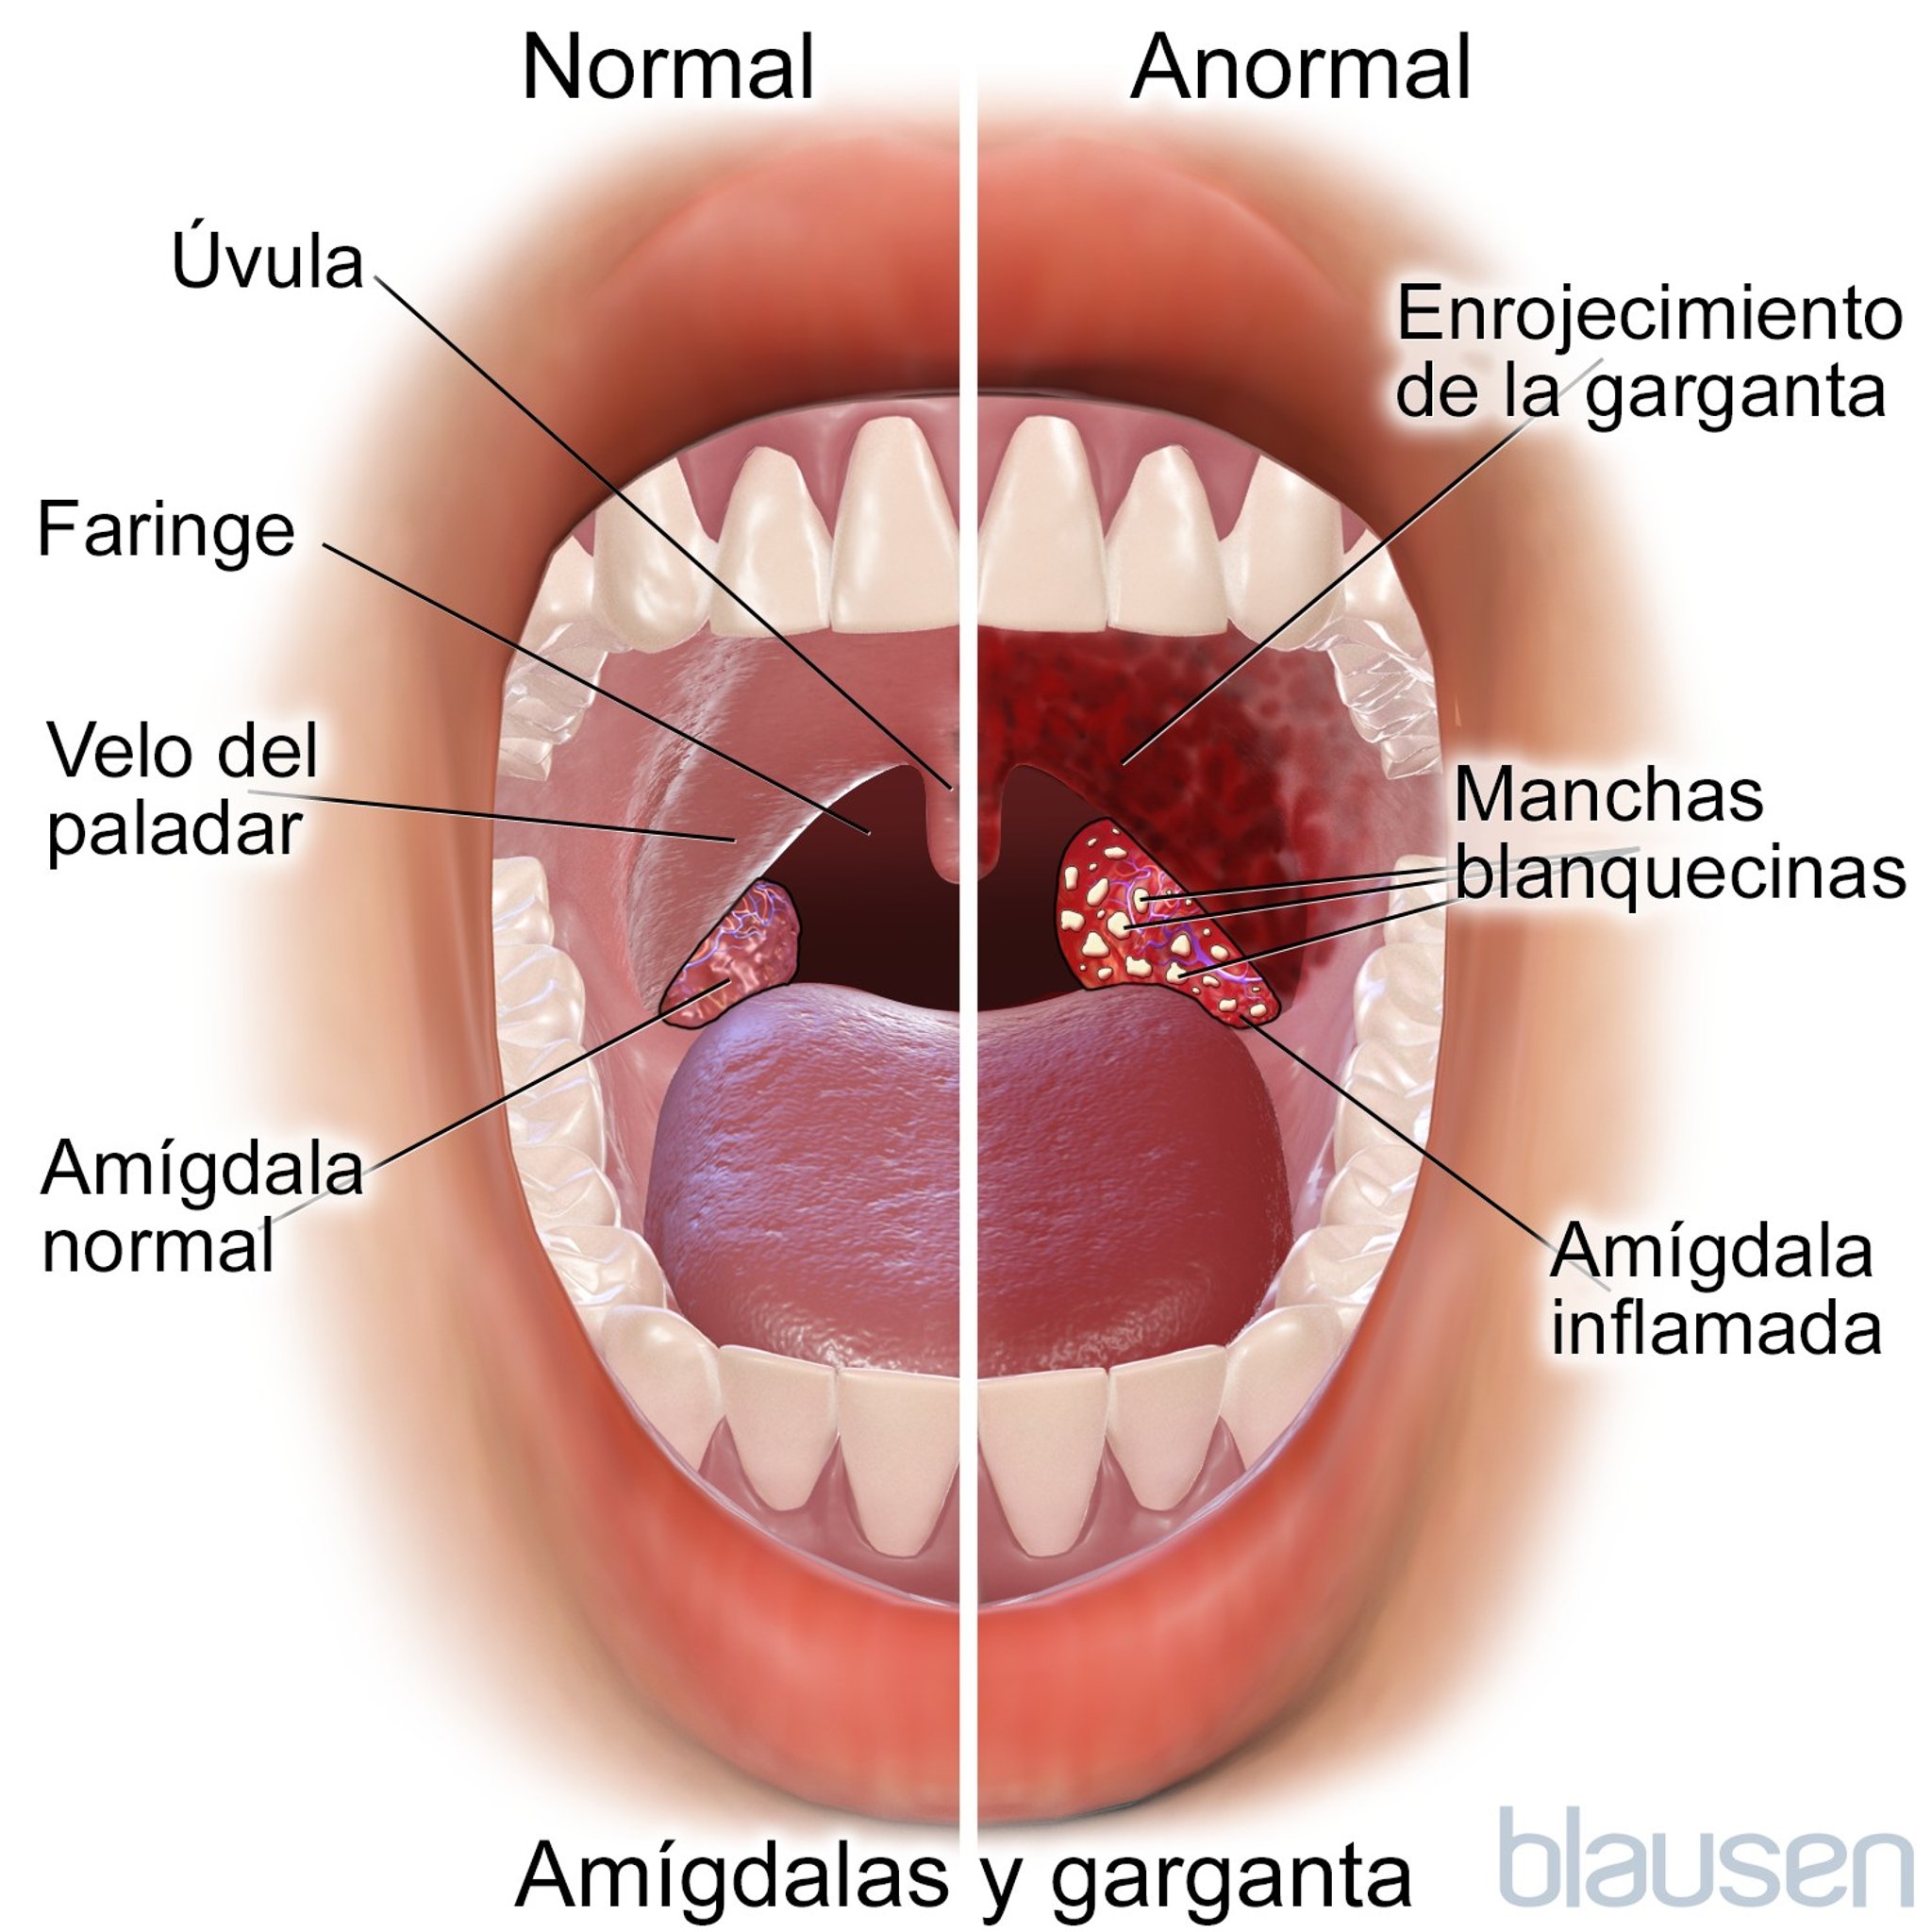 Amígdalas y garganta normales y anormales